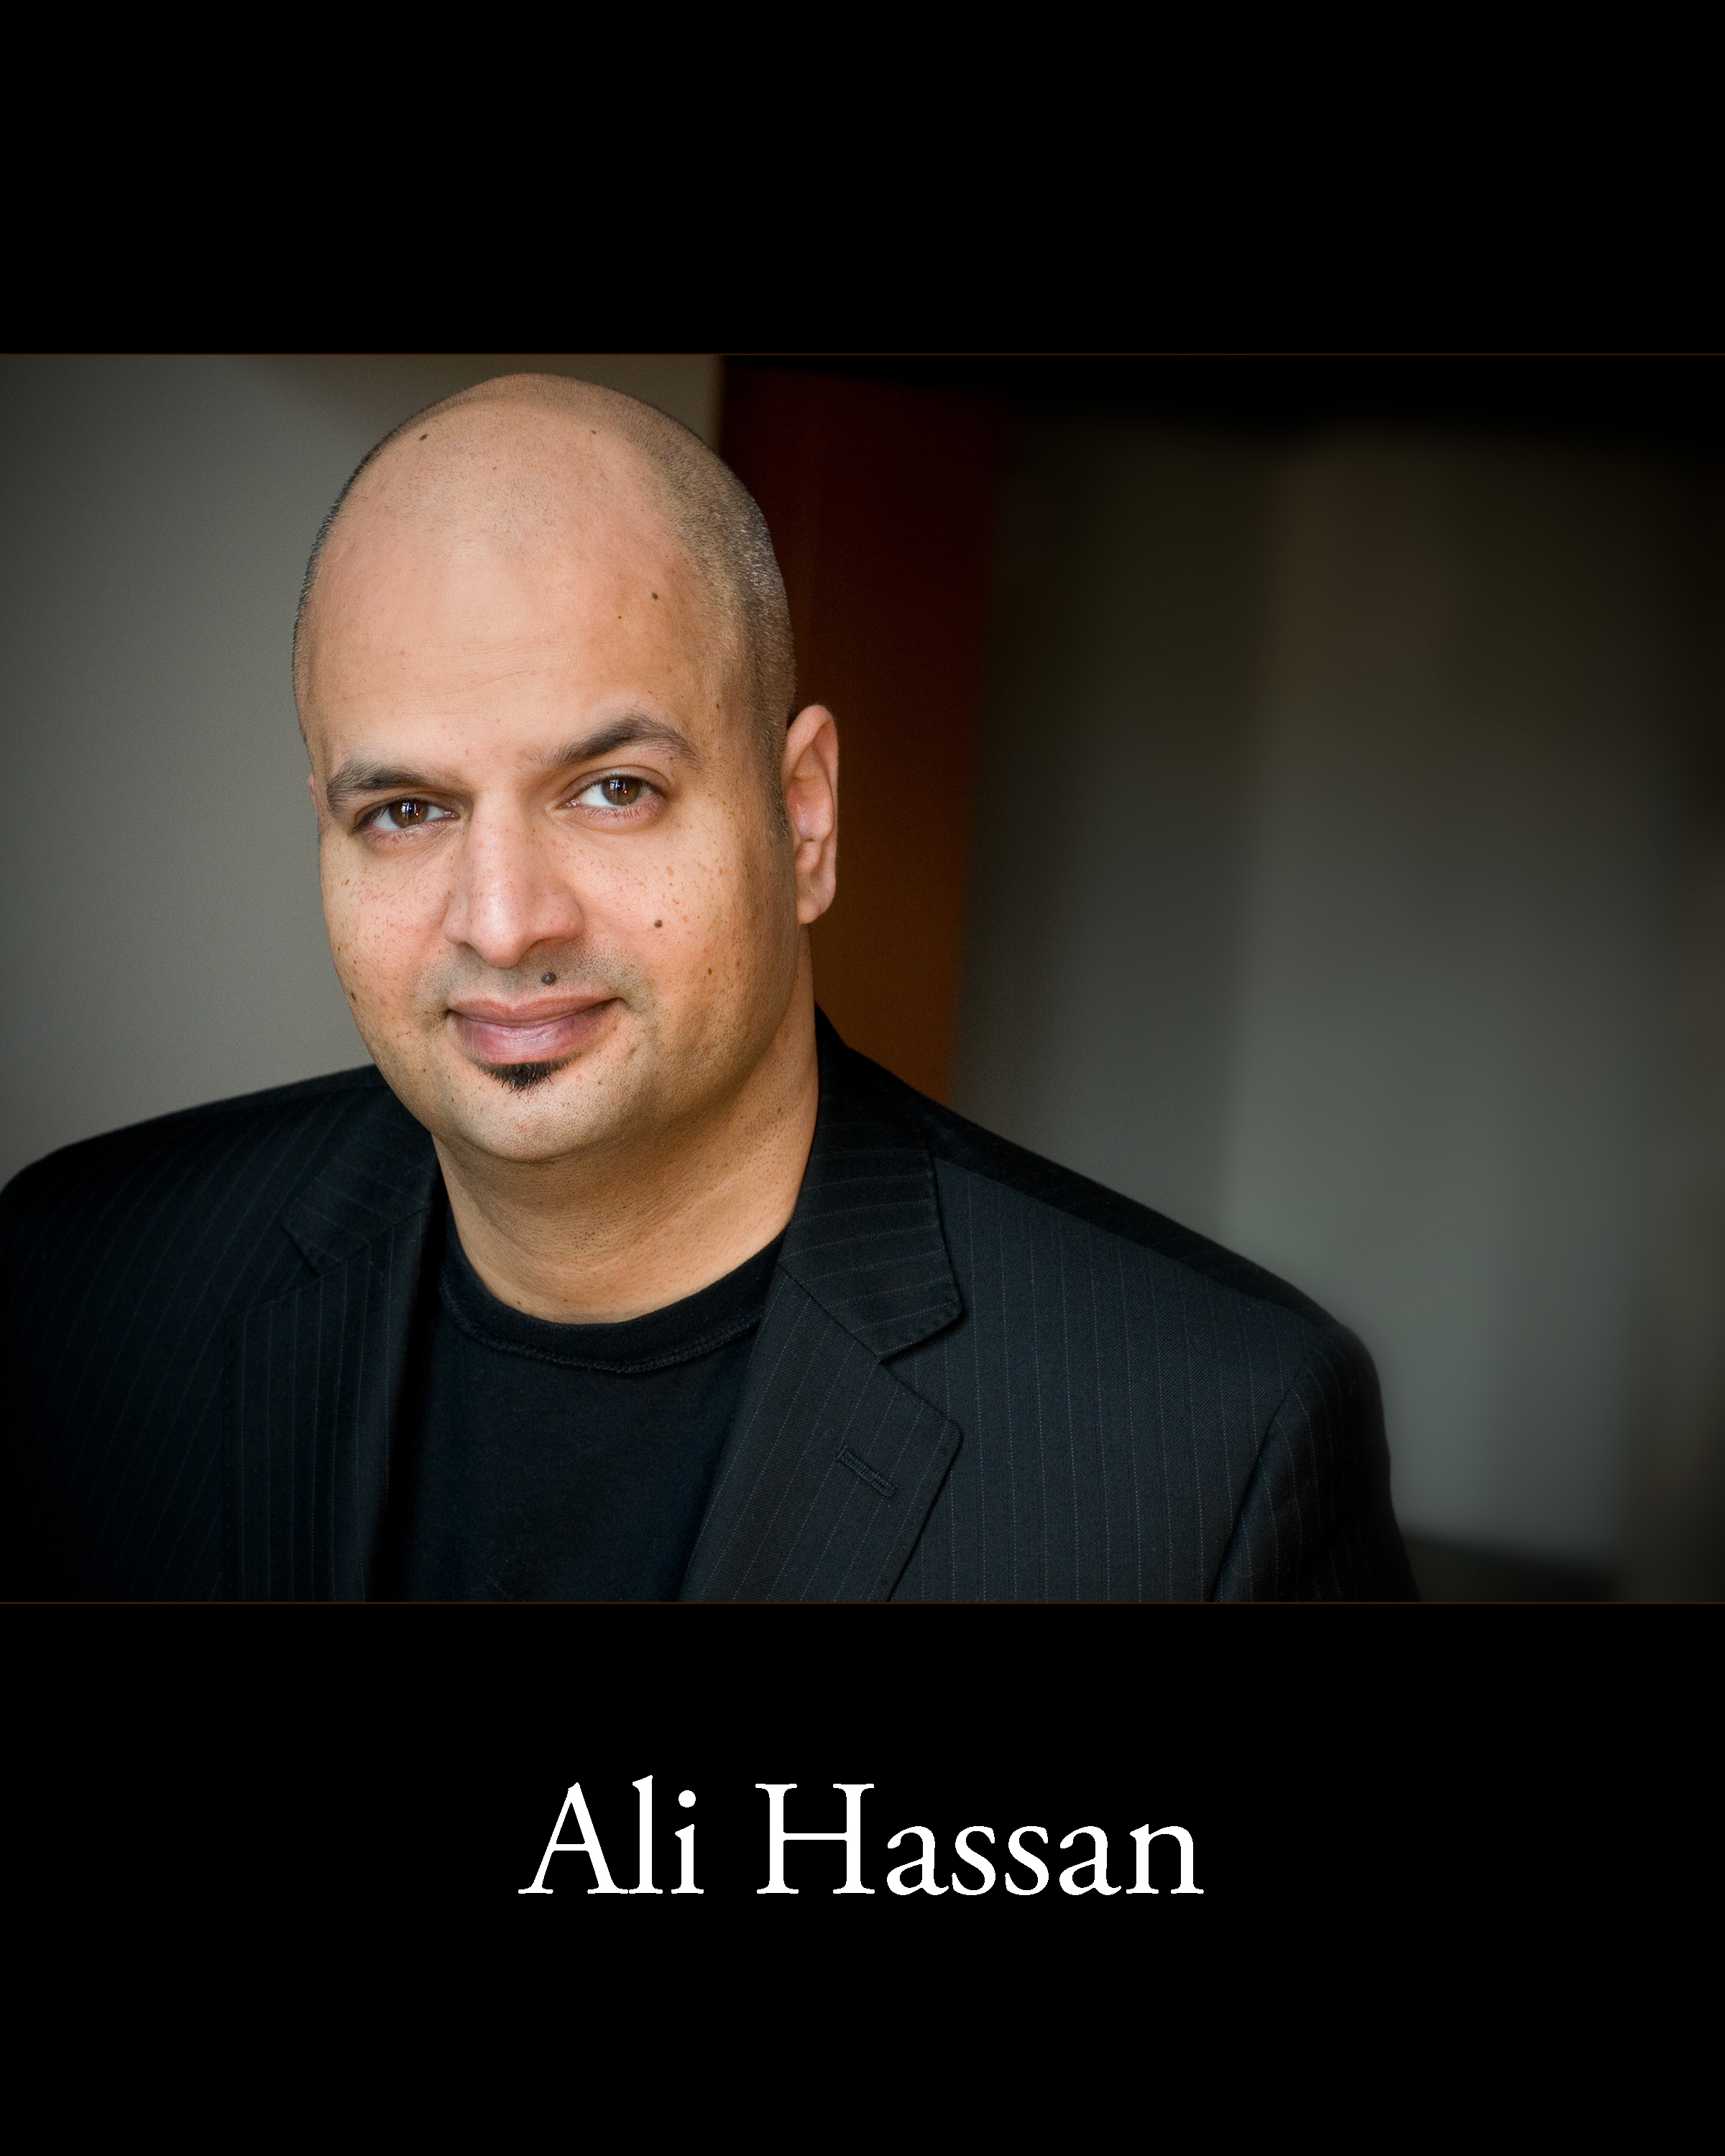 Ali Hassan headshot